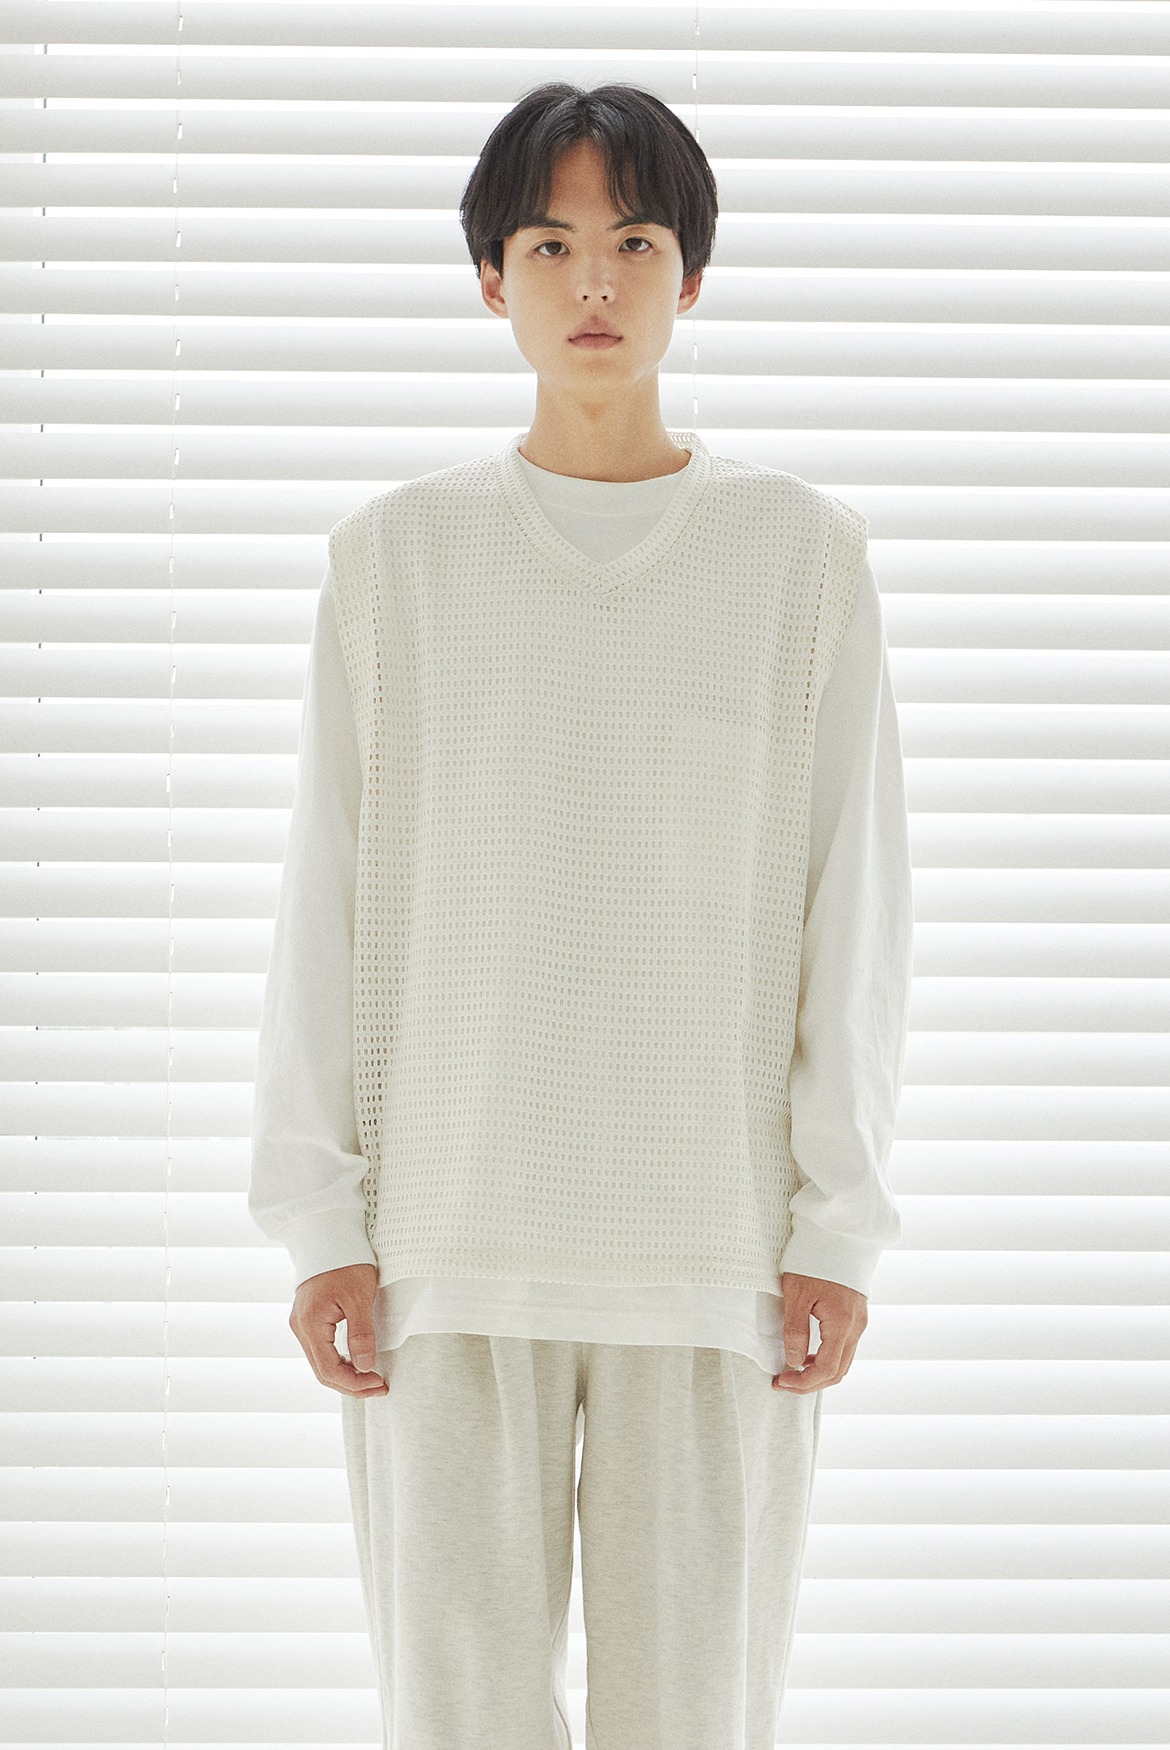 Crochet Vest [Ivory]